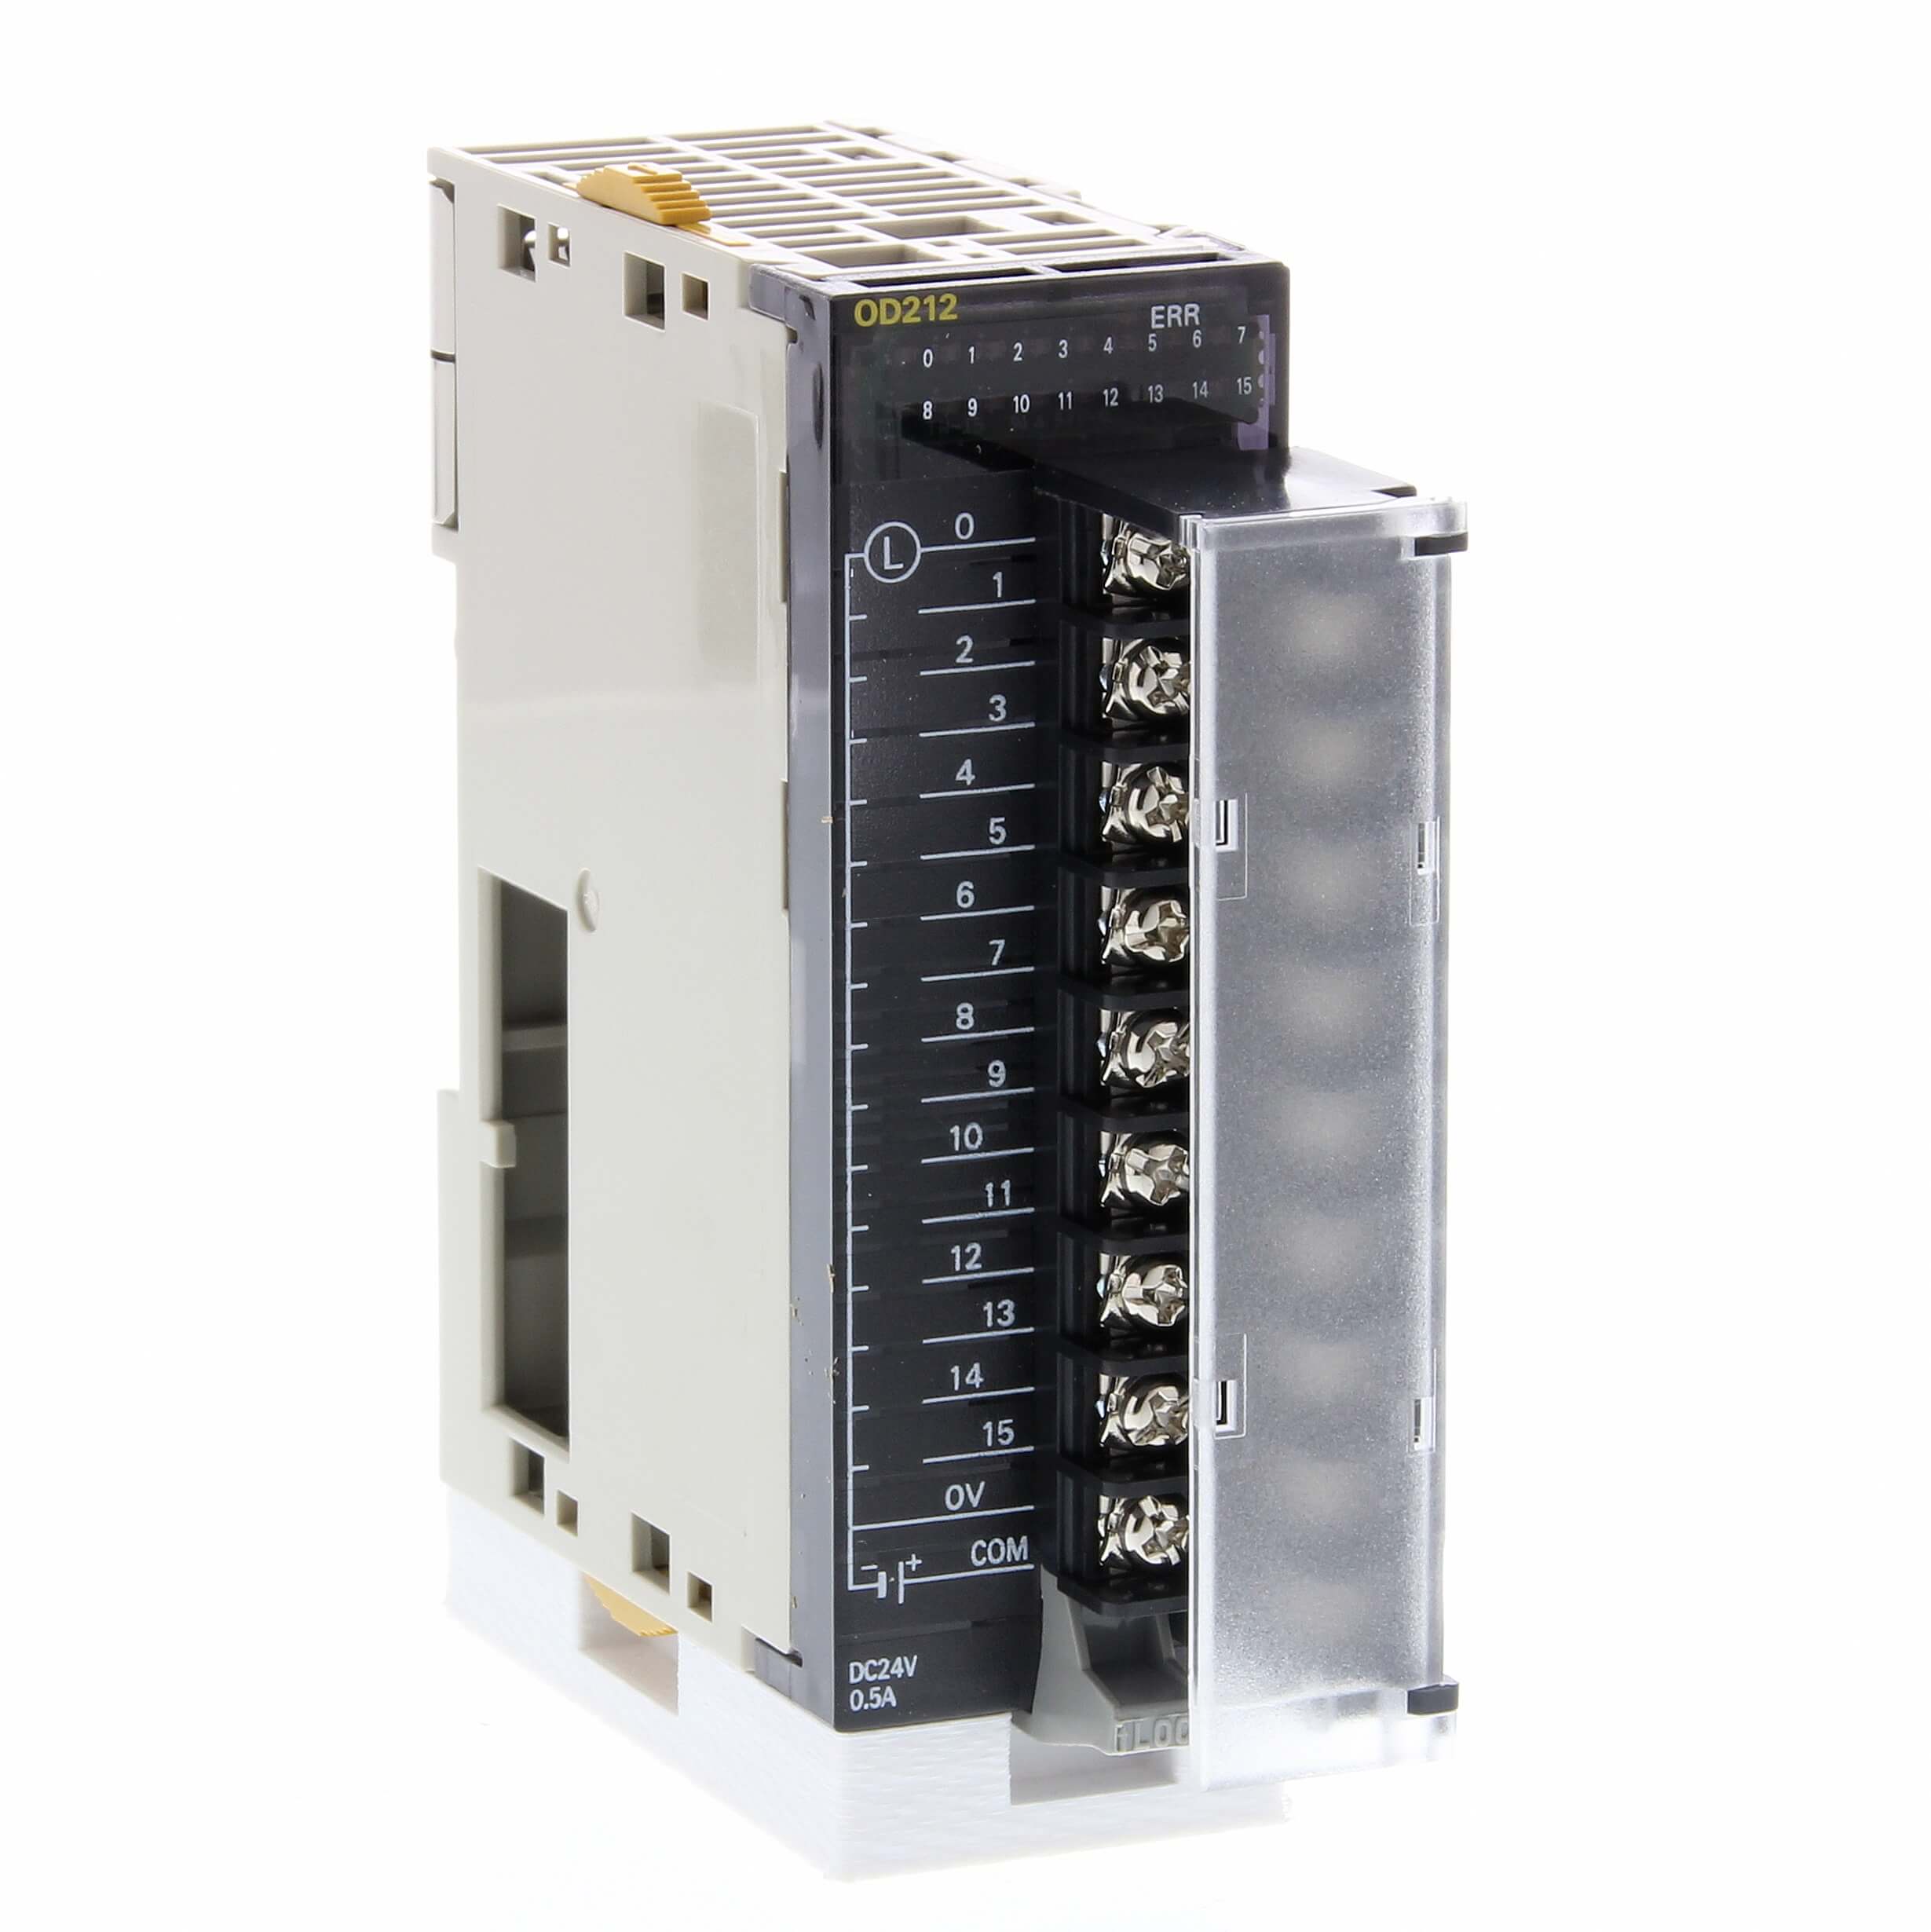 1PCS New in box Omron PLC Module CJ1W-ID212 CJ1WID212 